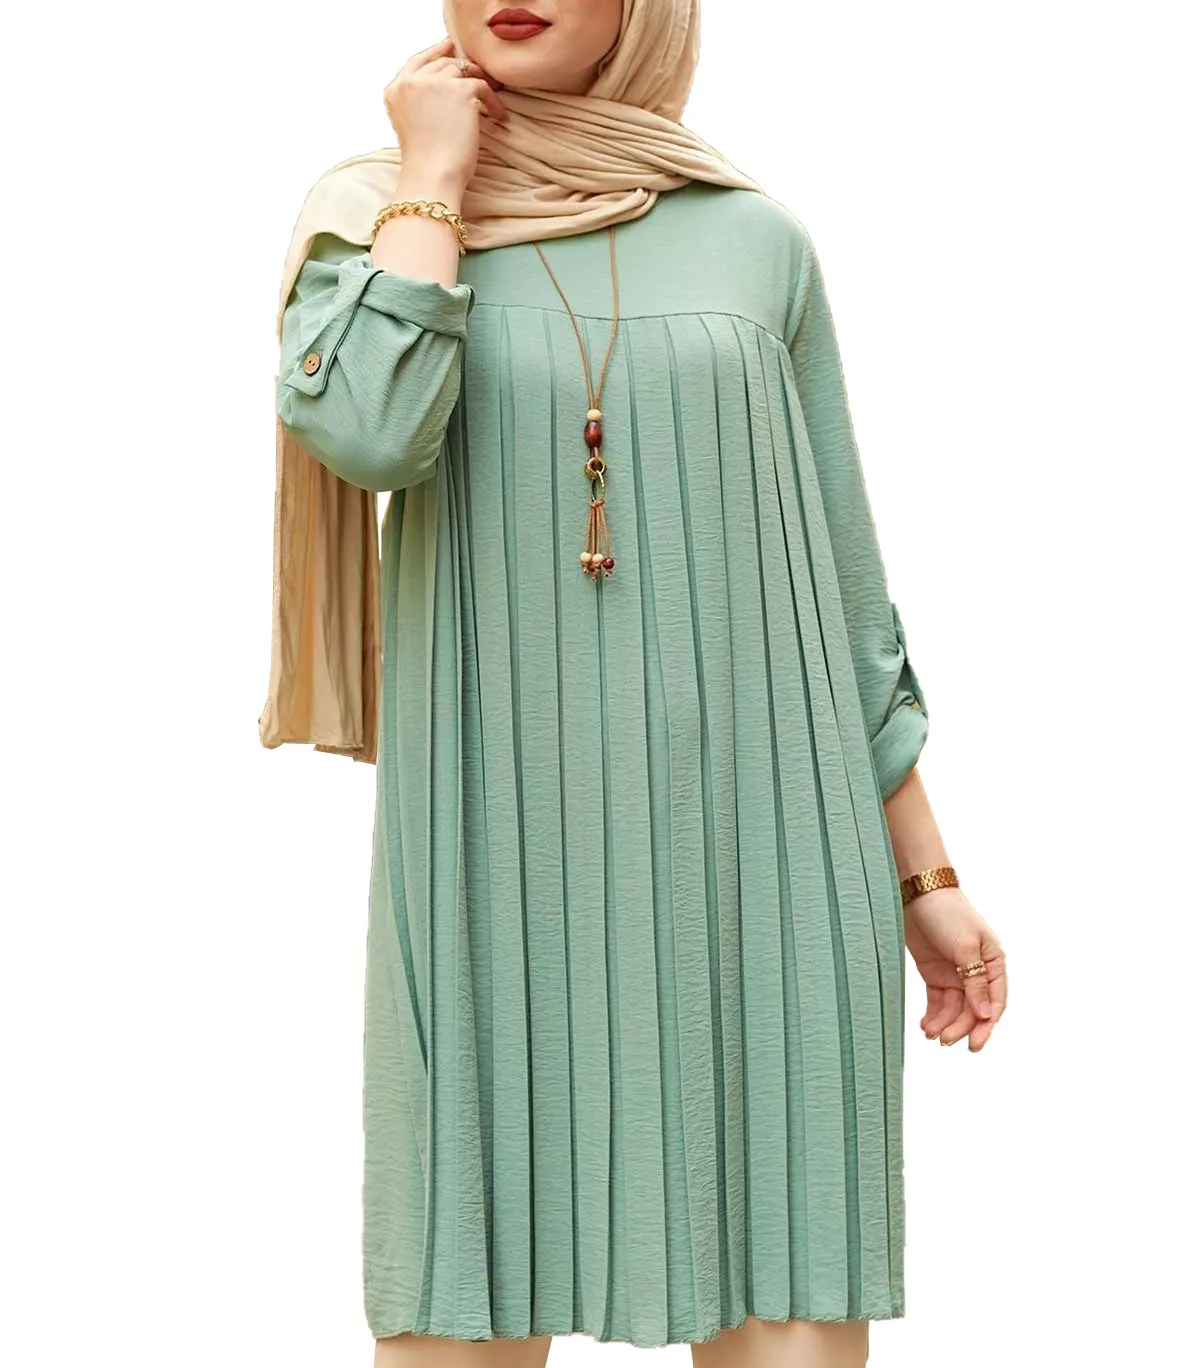 LLEID 5XL plus size abaya pieghettato musulmano multicolore casual baju musulmano dewasa manica lunga tunica top camicetta musulmana